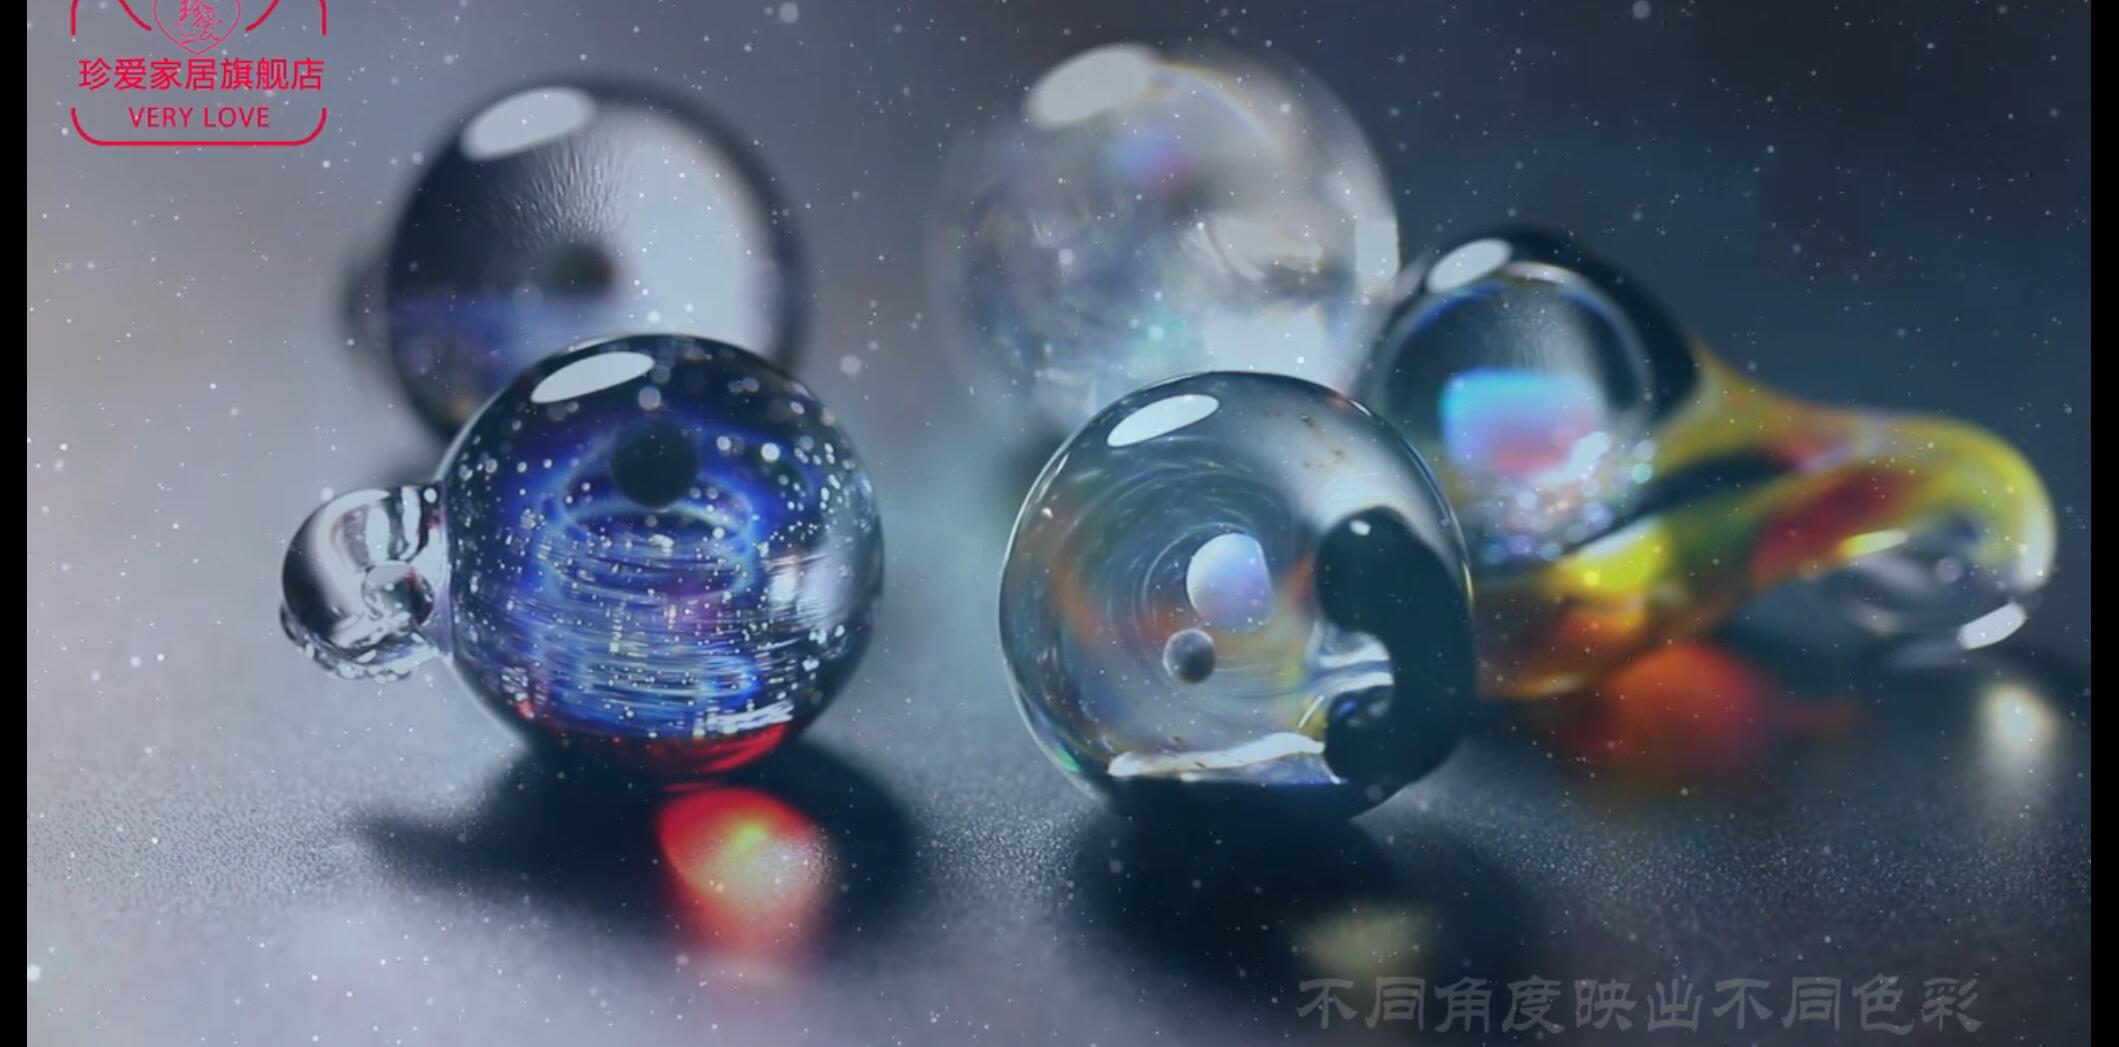 最近流行的日本手工琉璃珠静物展示小视频40秒——1月整理